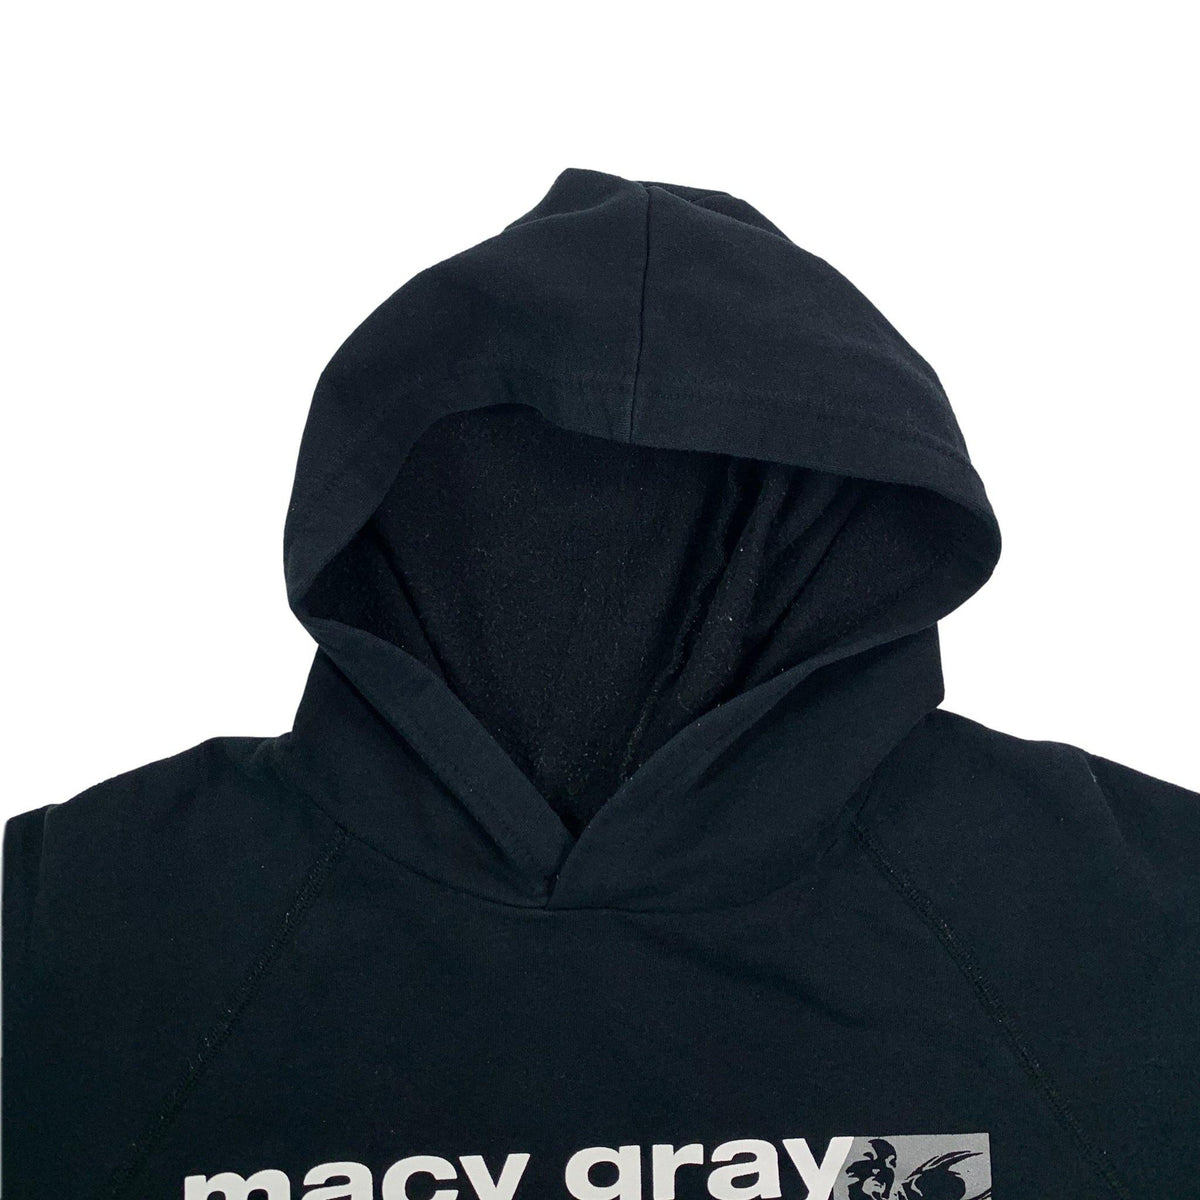 Vintage Macy Gray &quot;The id&quot; Raglan Pullover Sweatshirt - jointcustodydc